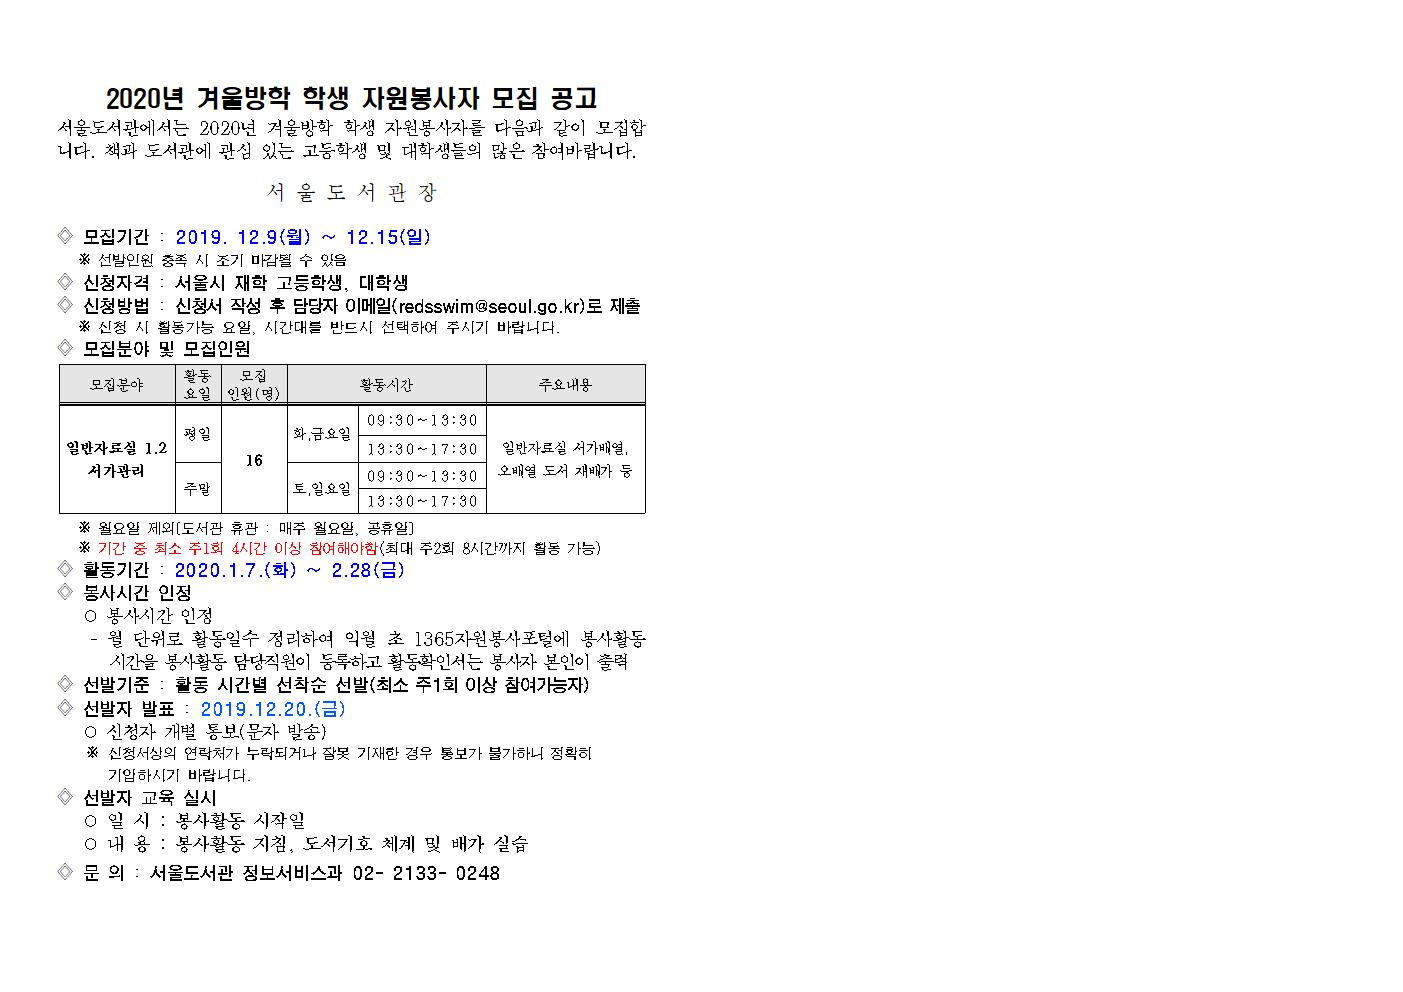 [모집완료]2020년 겨울방학 서울도서관 학생 자원봉사자 모집 공고 포스터